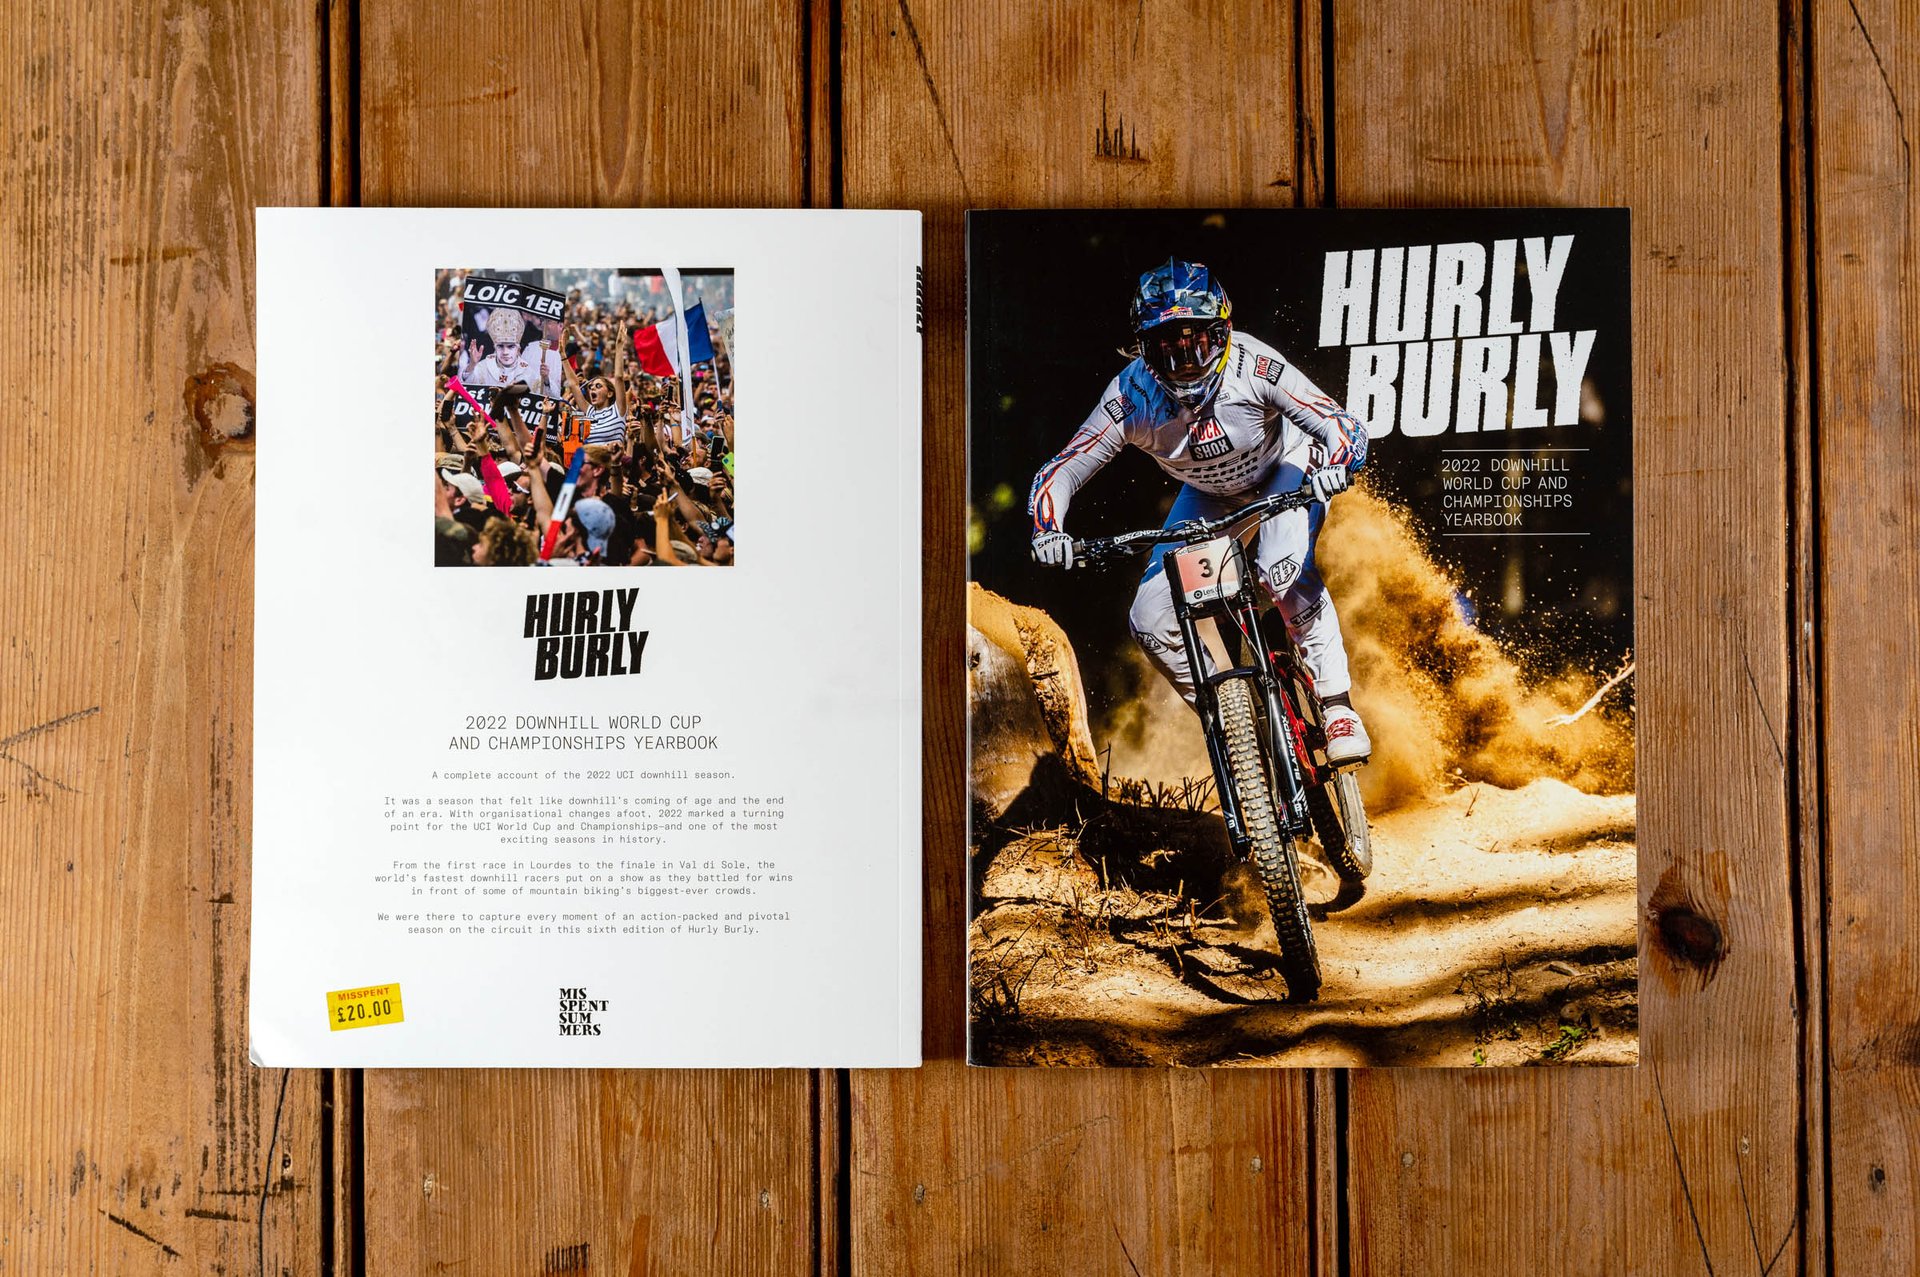 Hurly_Burly_2022_downhill_yearbook-2